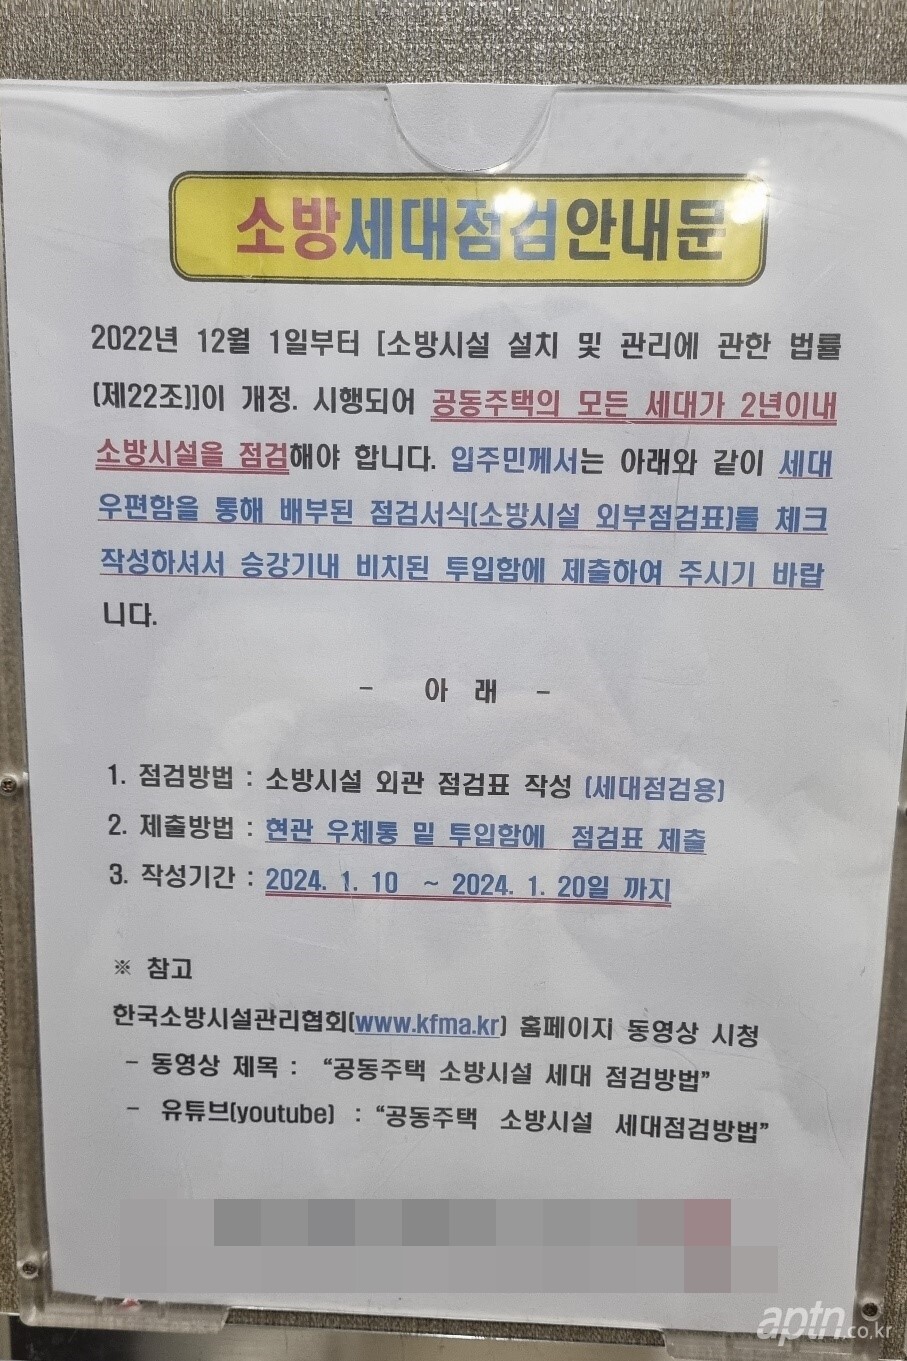 경기 안양시 소재 아파트 내 게시판에 게시된 세대 내 소방시설 점검 안내문.